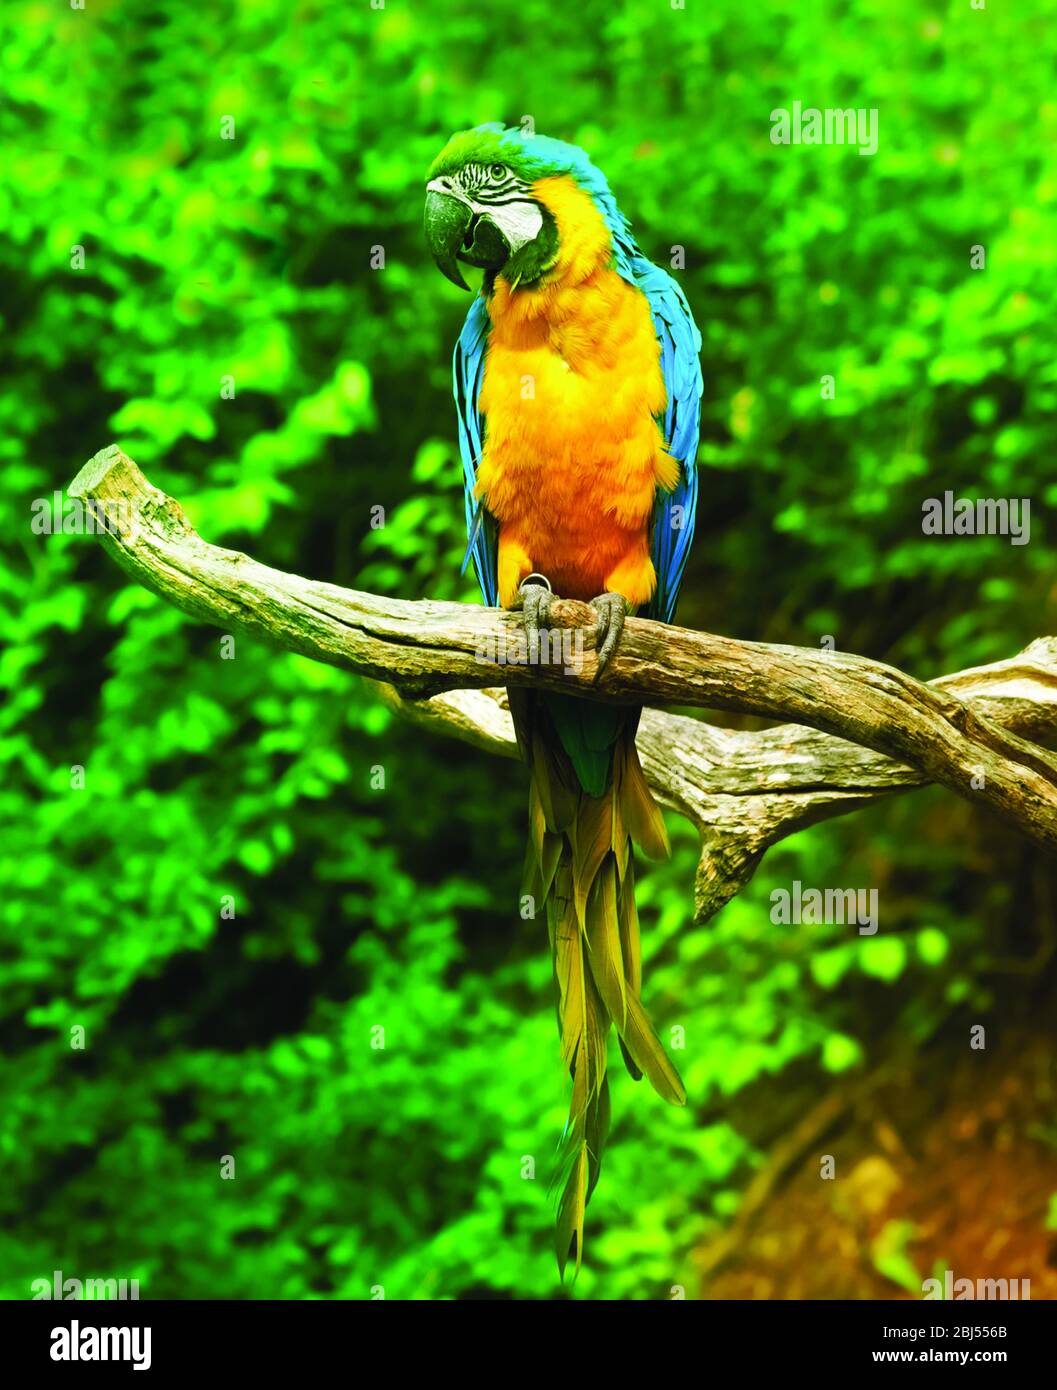 Photo de stock - aras de Scarlet, Ara Macao, oiseau assis sur la branche. Perroquets de macaw dans la forêt tropicale. Banque D'Images